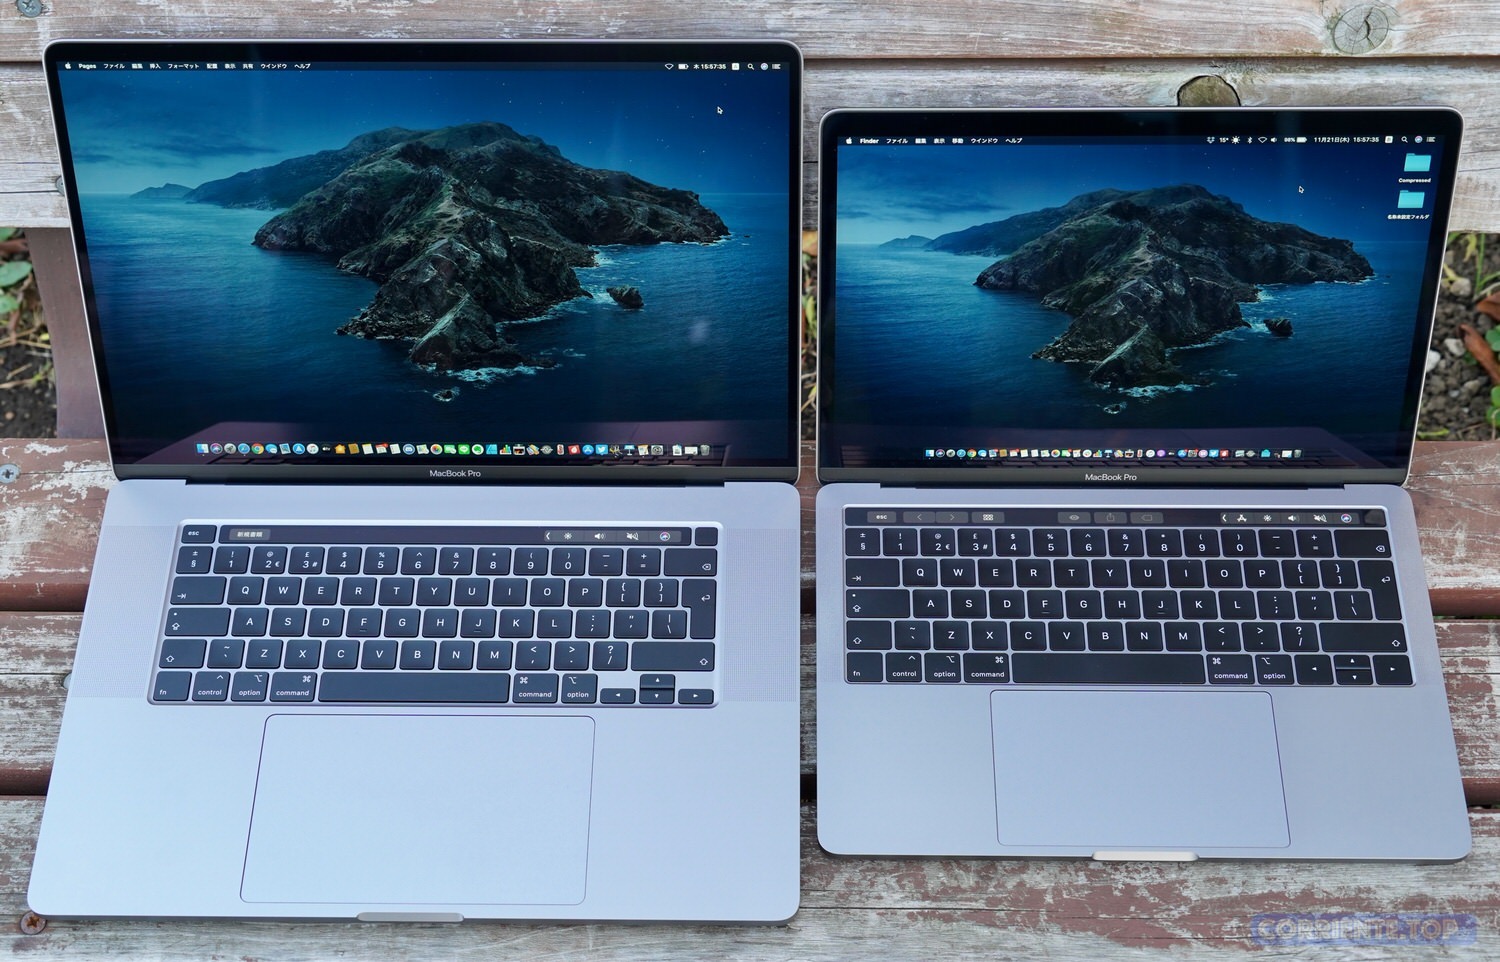 次期MacBook Pro (14インチ・16インチ) は画面性能が強化。やはり 